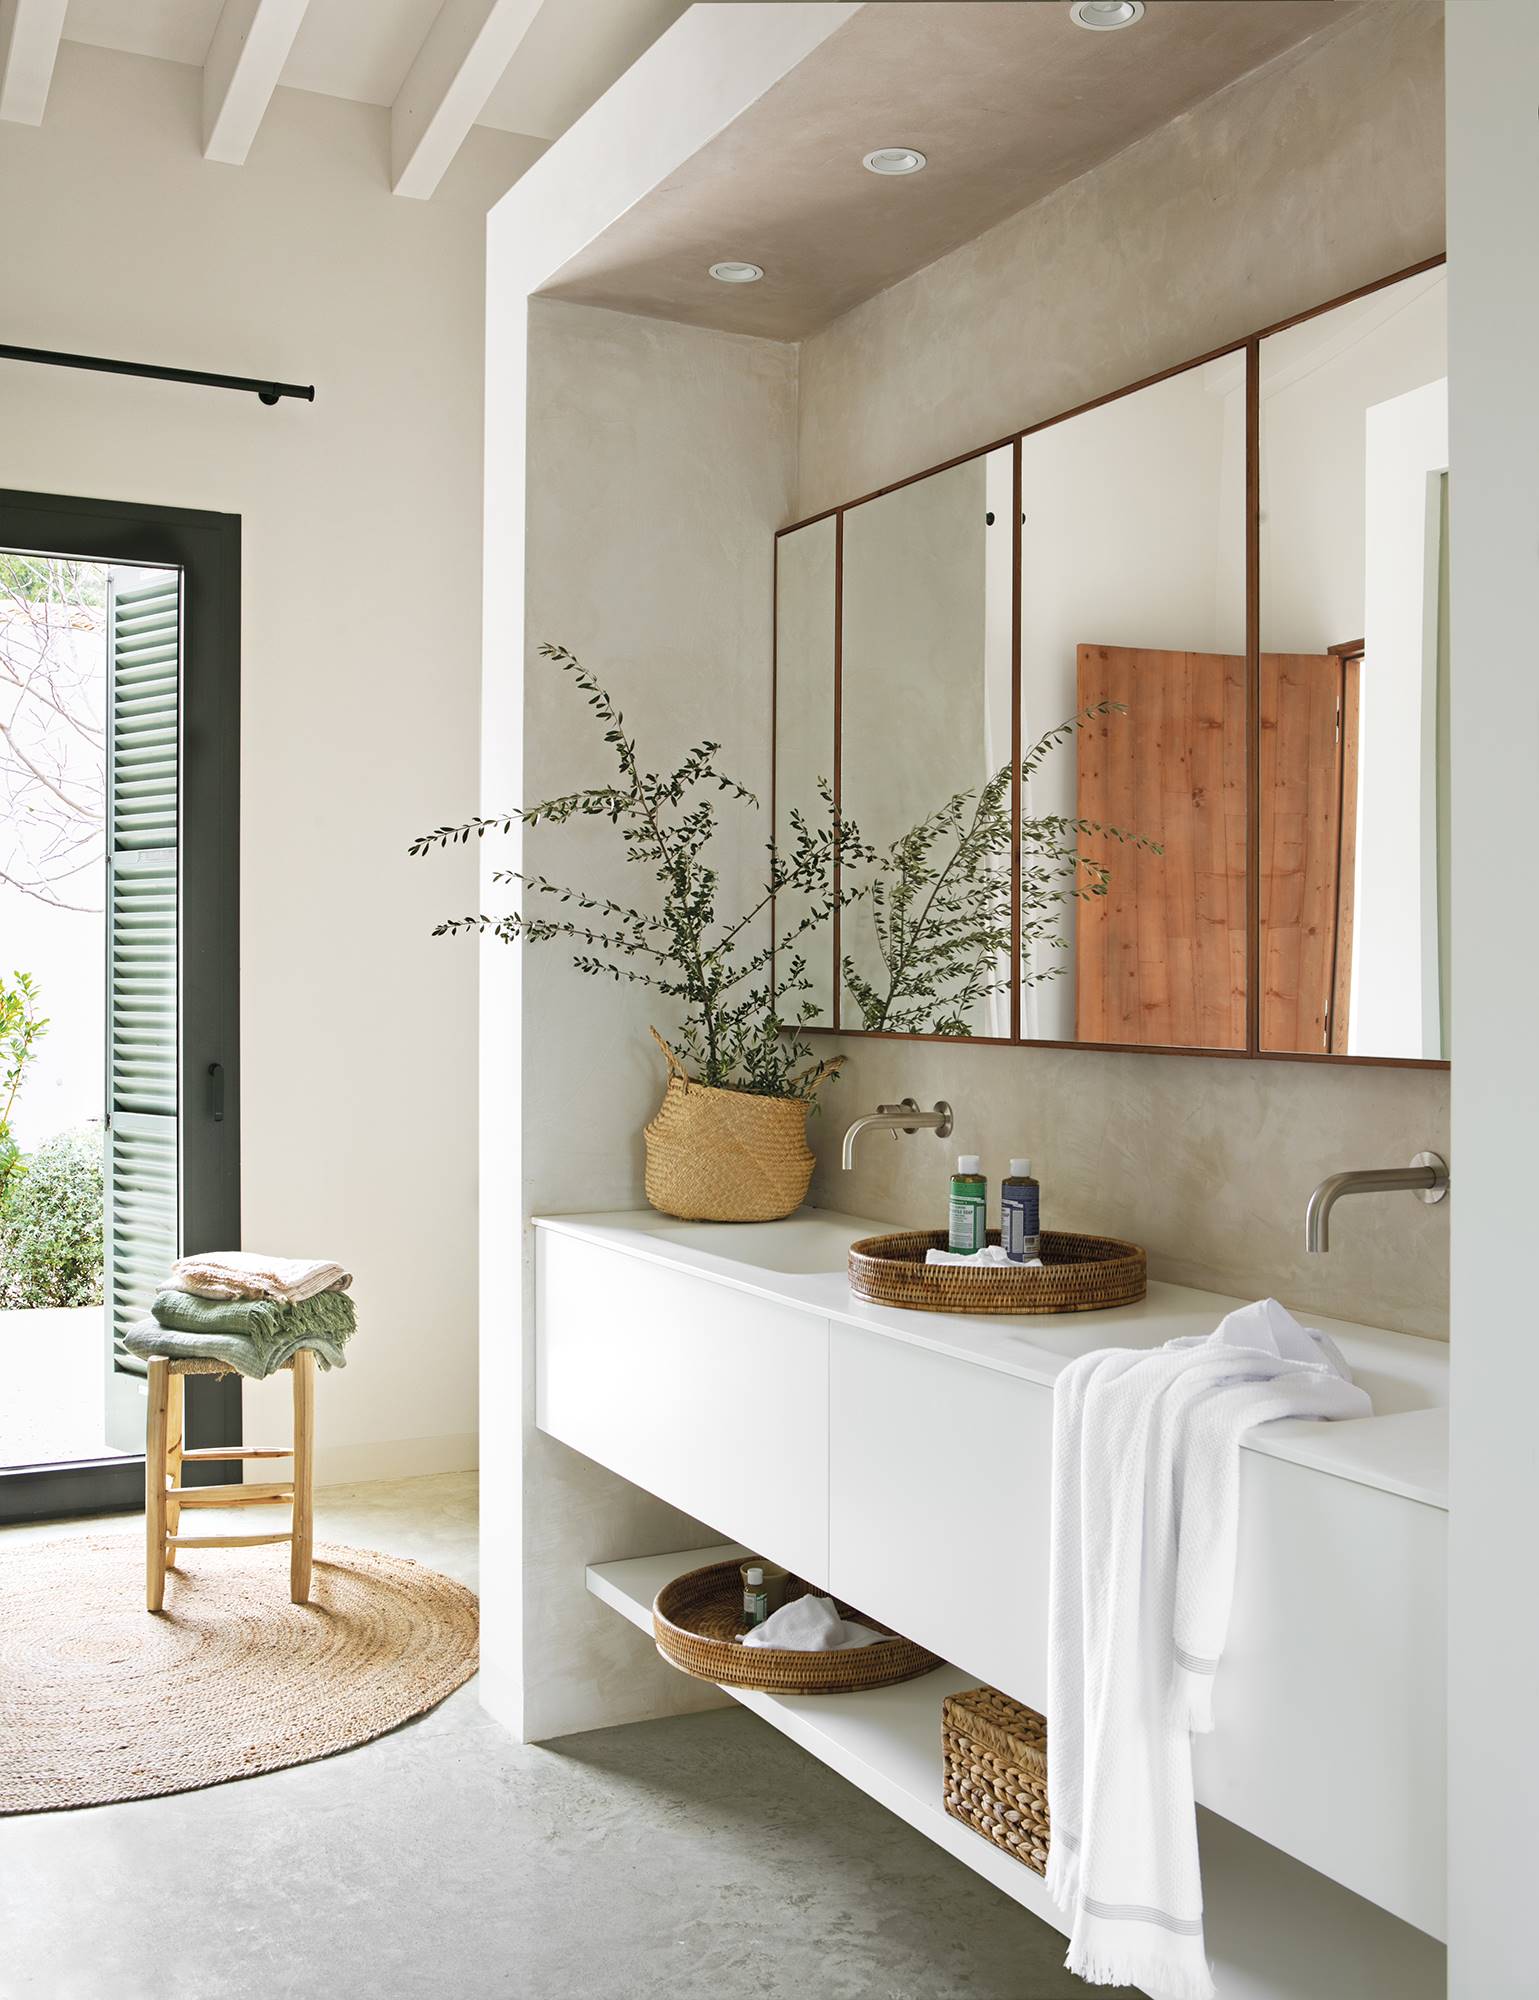 Baño con mueble blanco con balda, espejo, planta y alfombra de fibras.